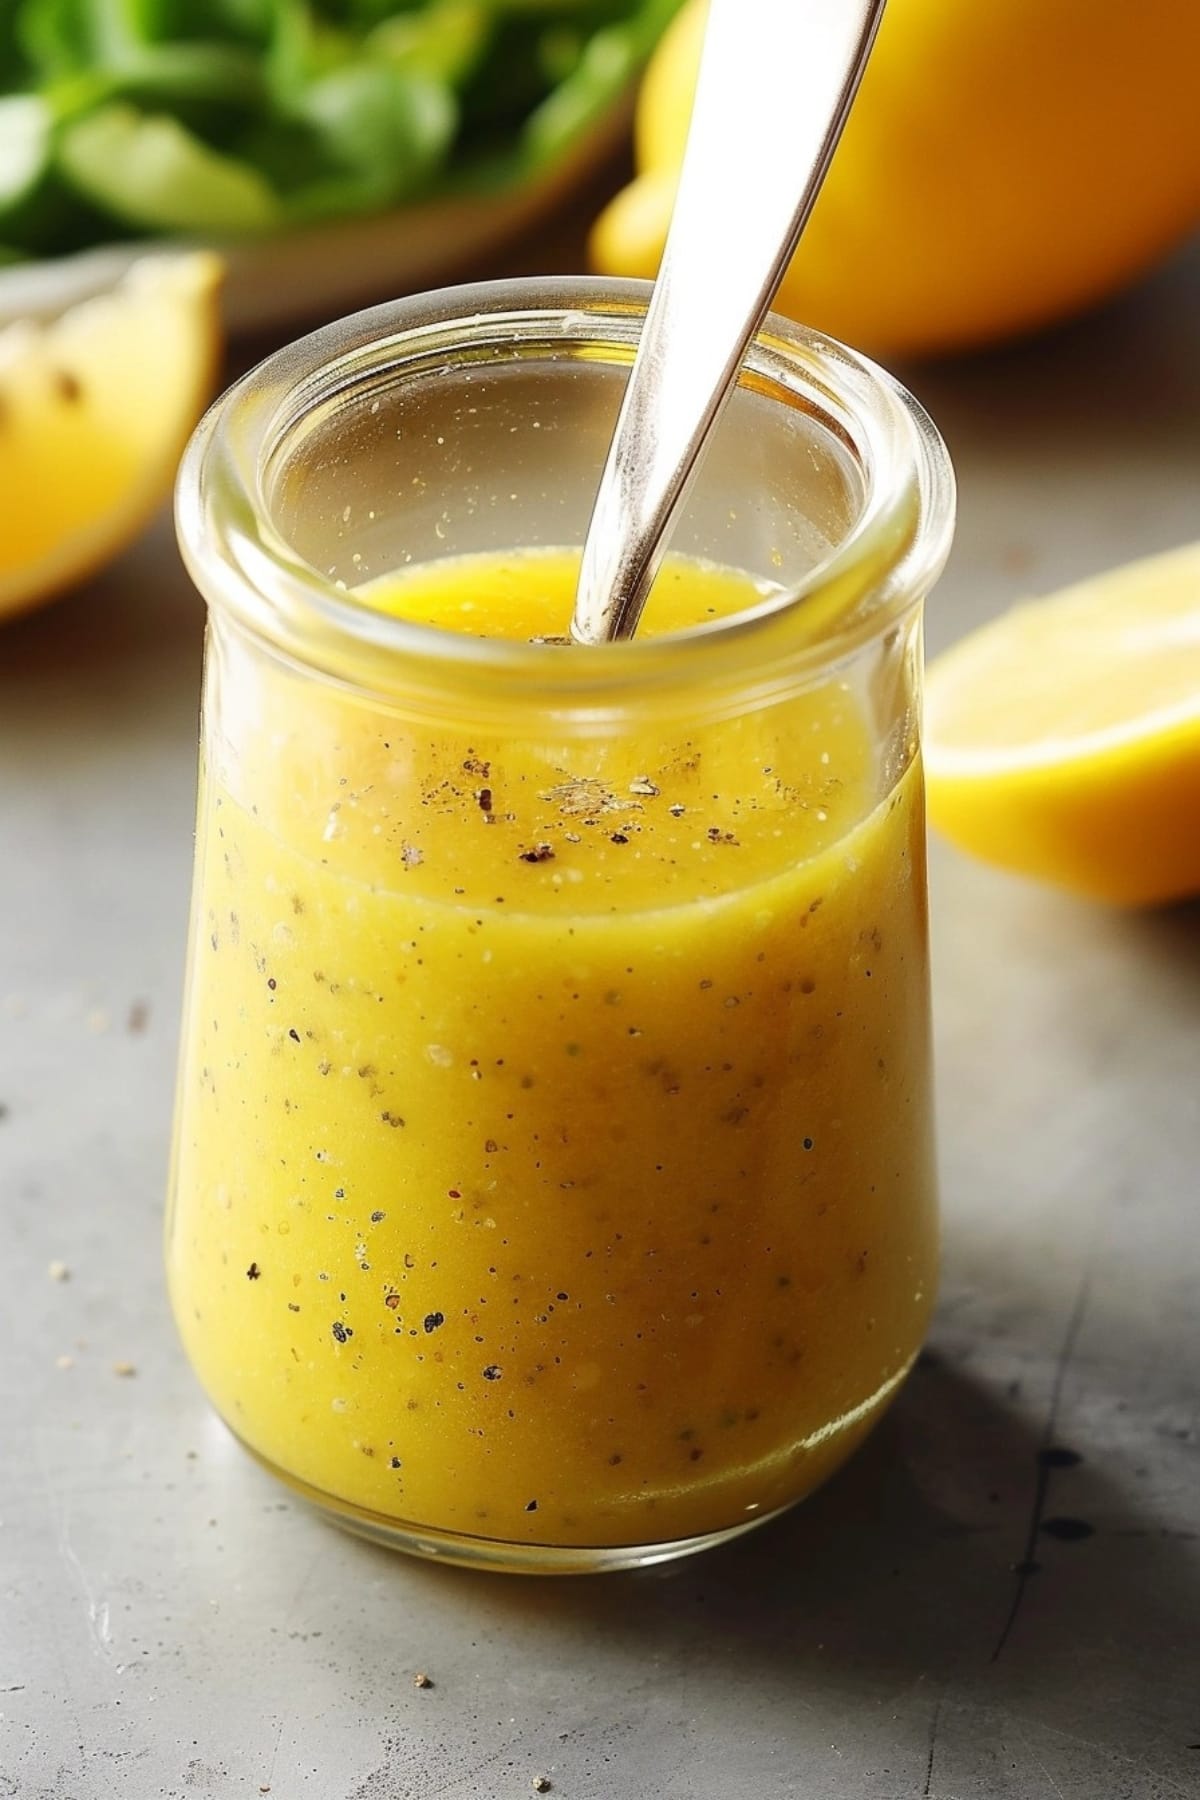 Lemon vinaigrette dressing in a jar